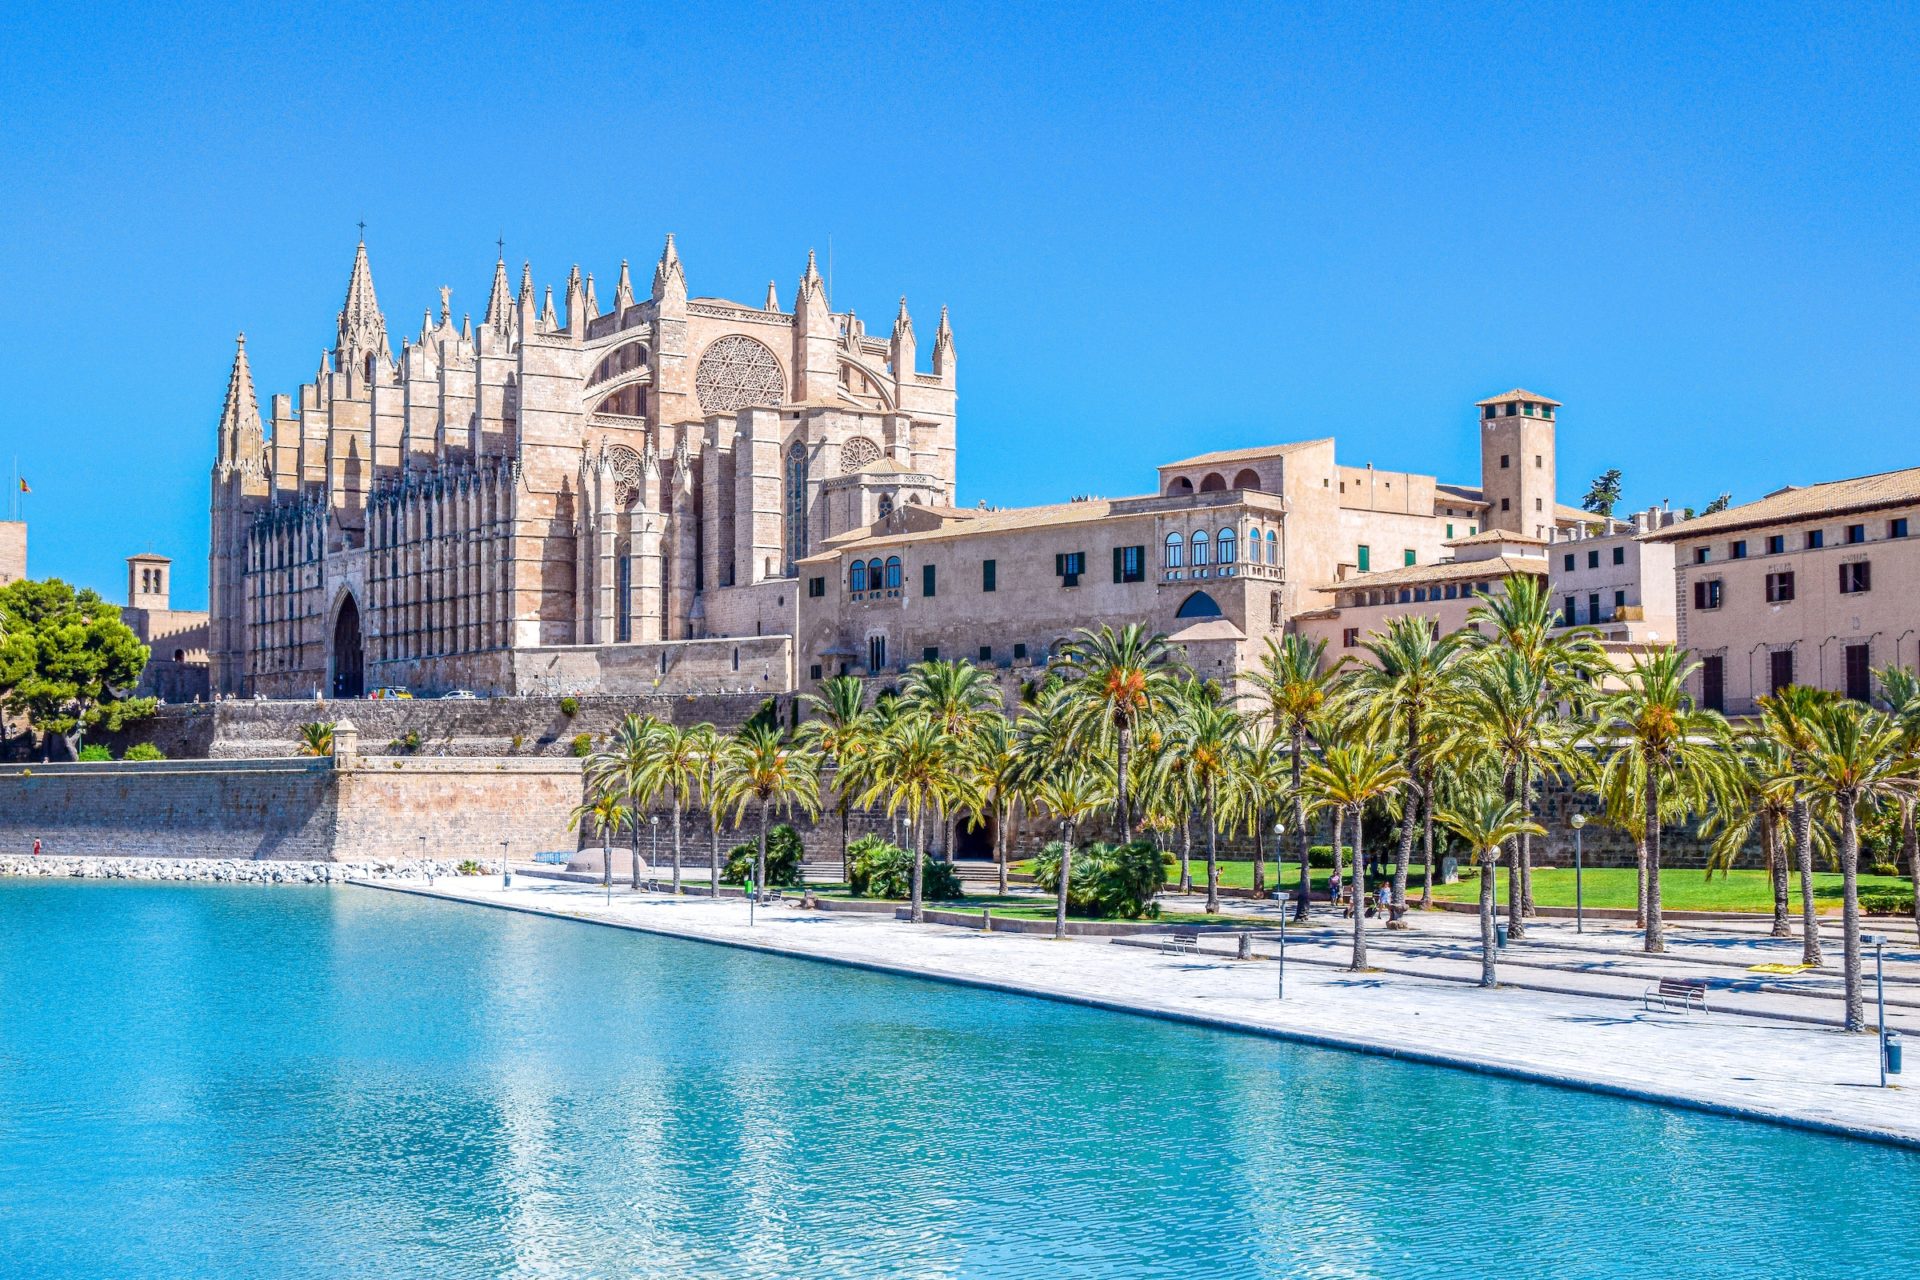 Catedral Mallorca